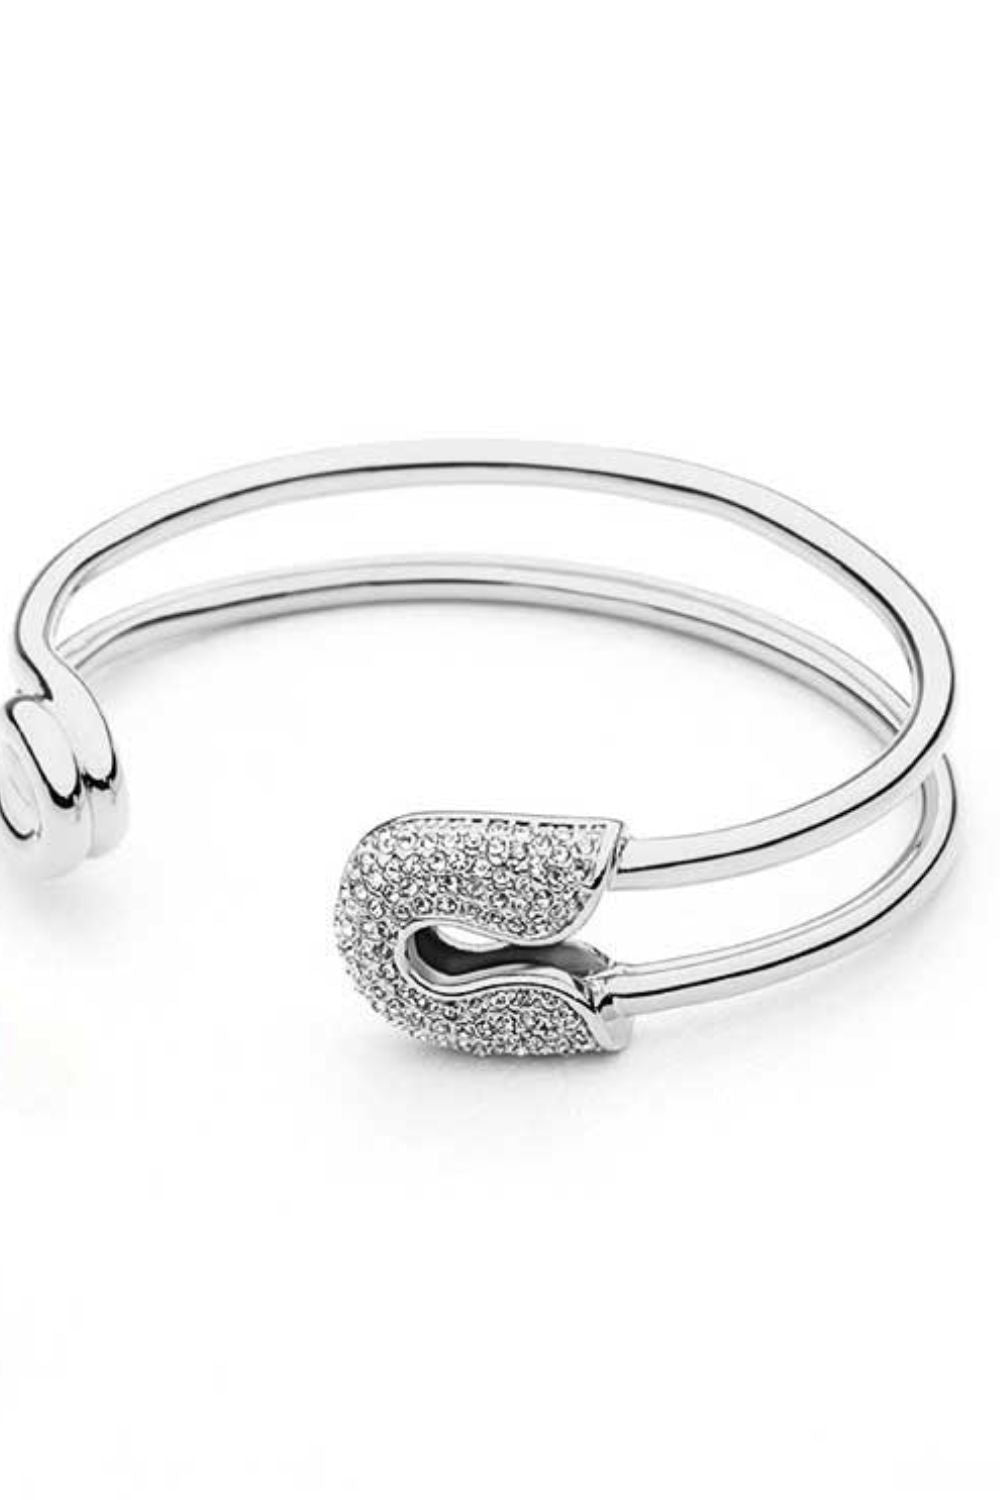 Rhinestone Double Hoop Bracelet - Women’s Jewelry - Bracelets - 5 - 2024